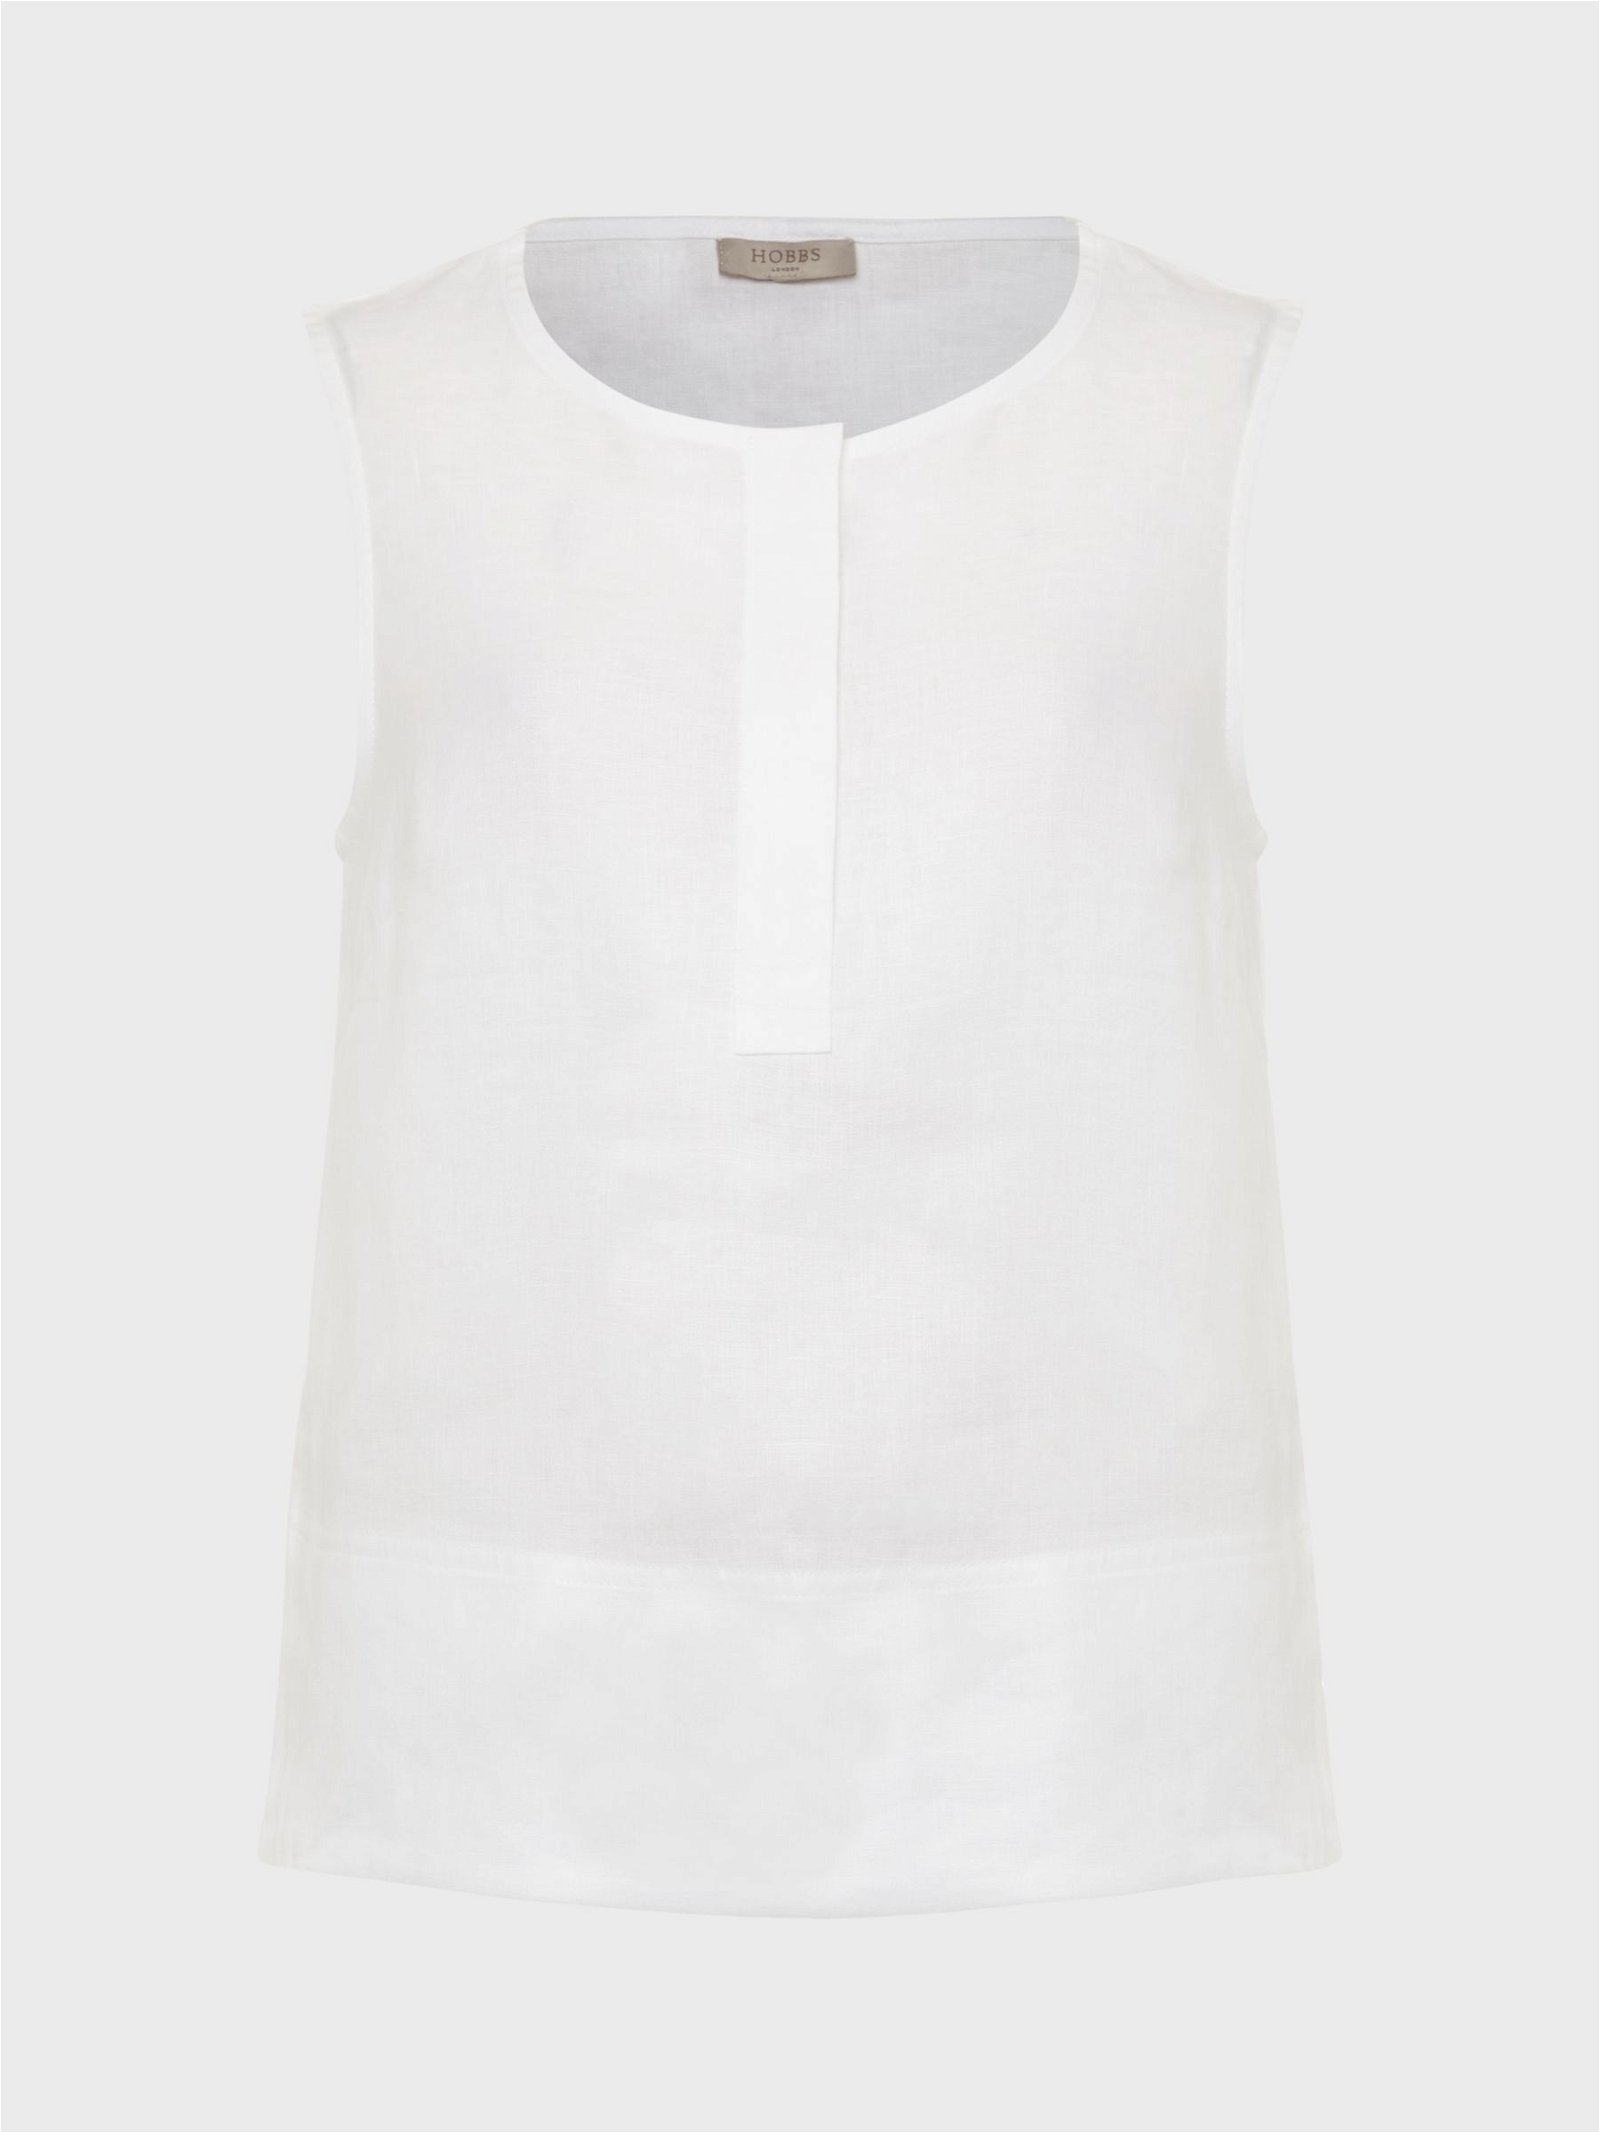 Hobbs Sleeveless Shirt, White